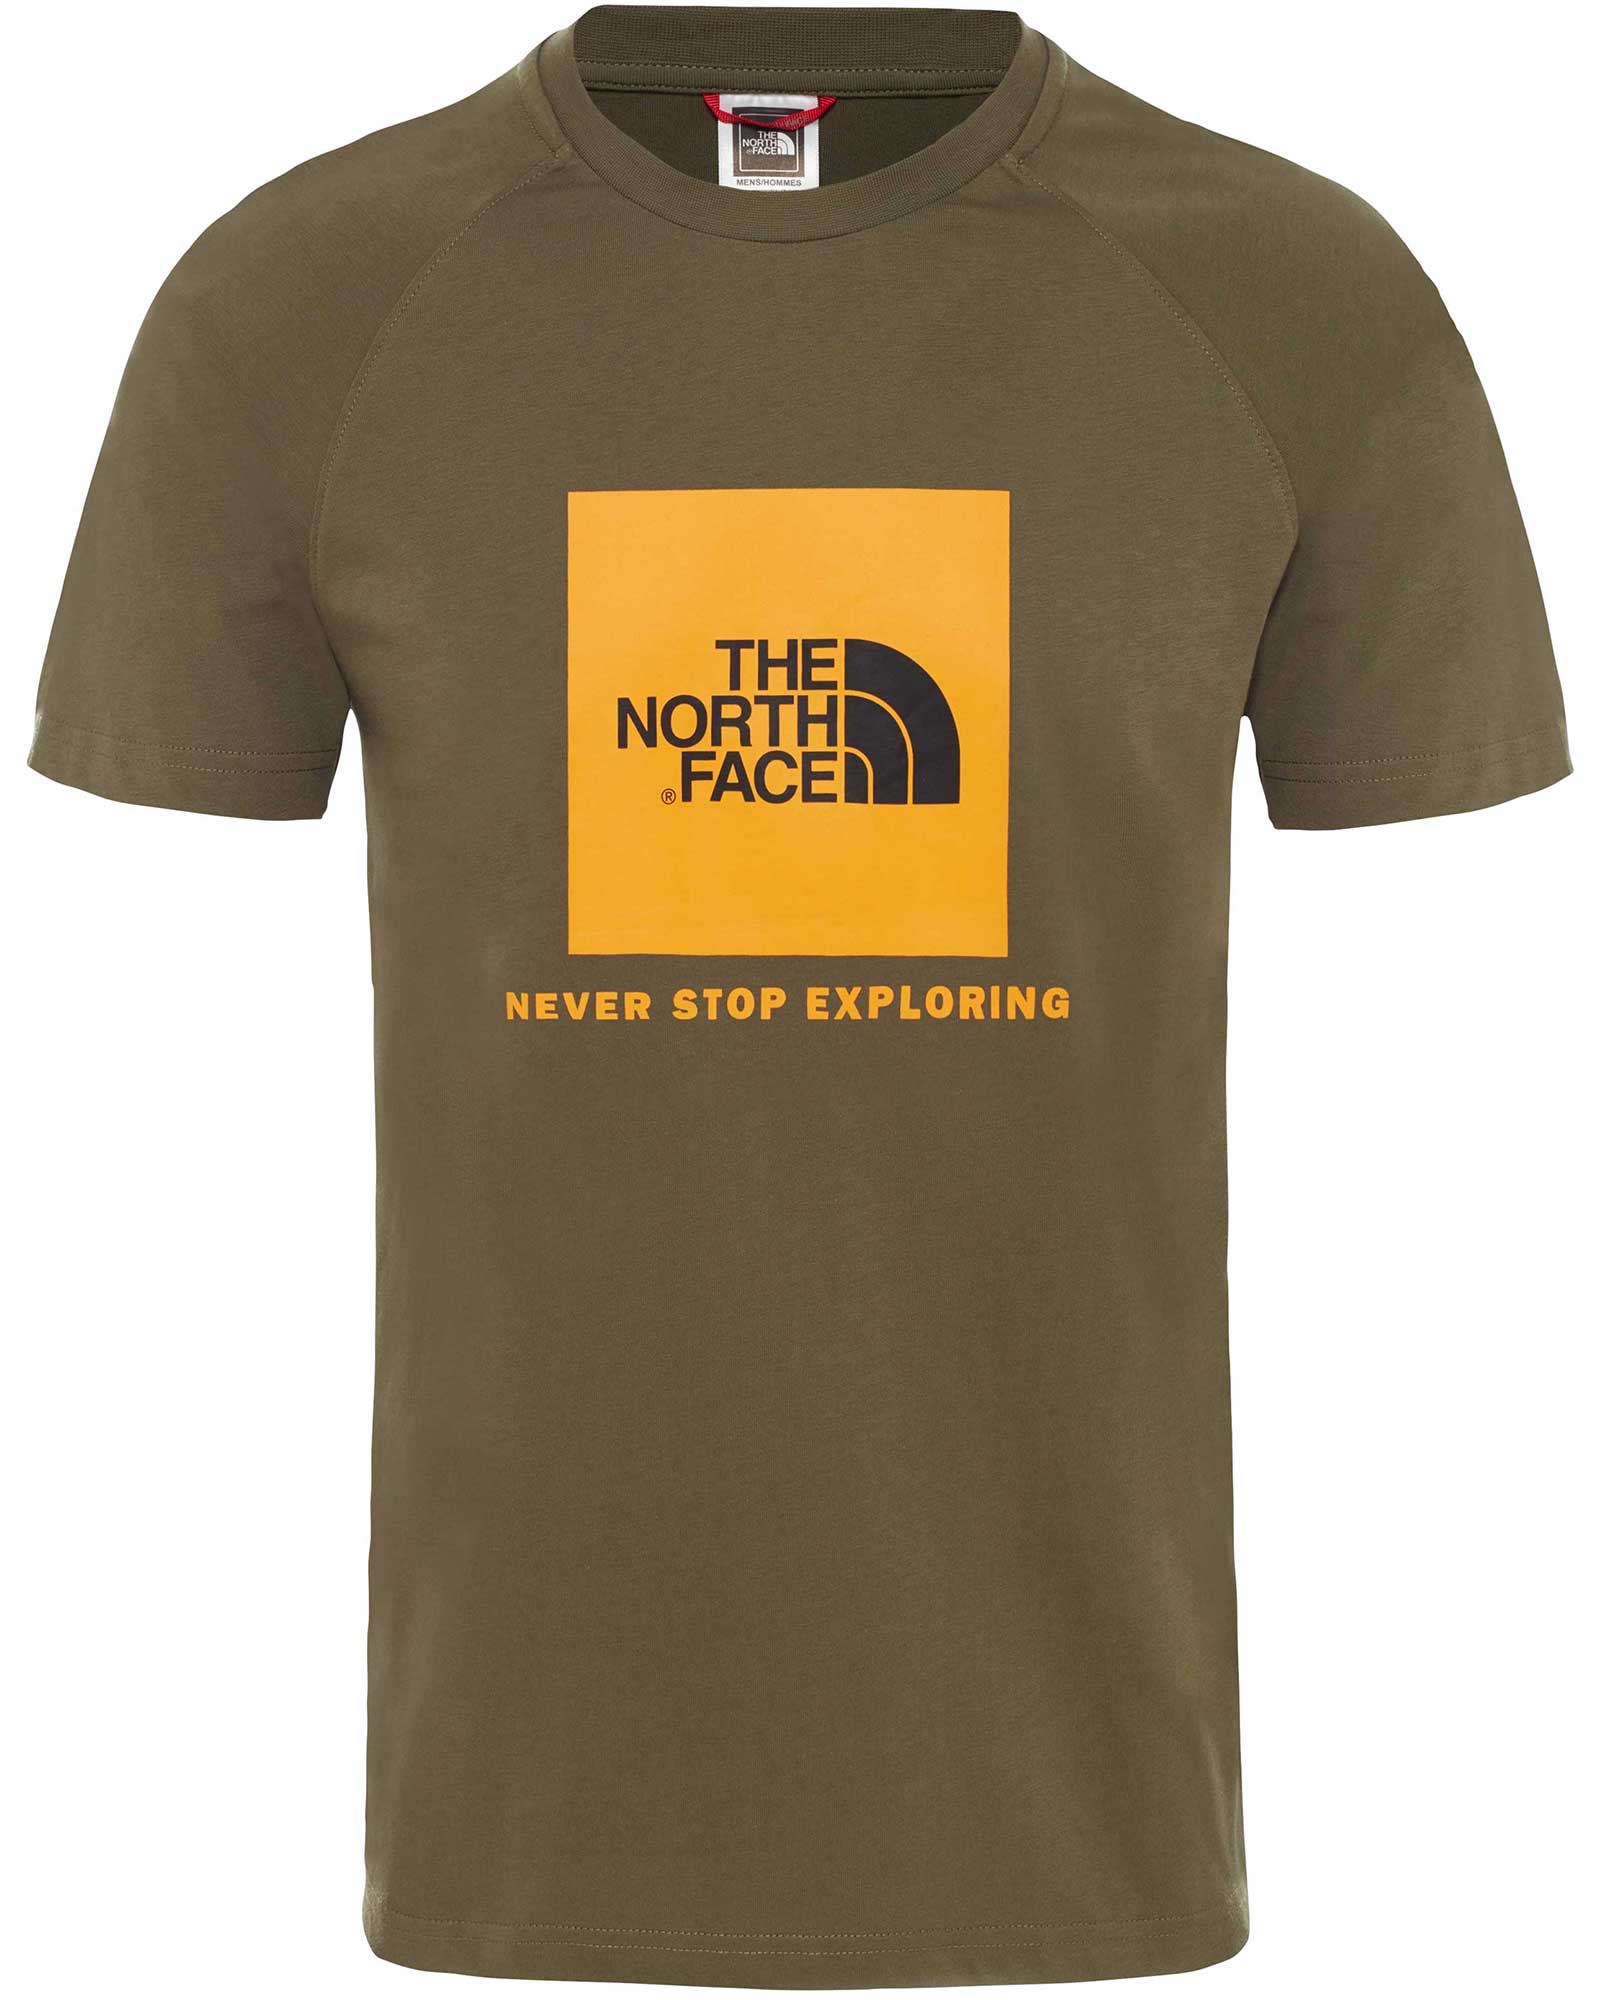 The North Face Raglan Red Box Mens T-shirt